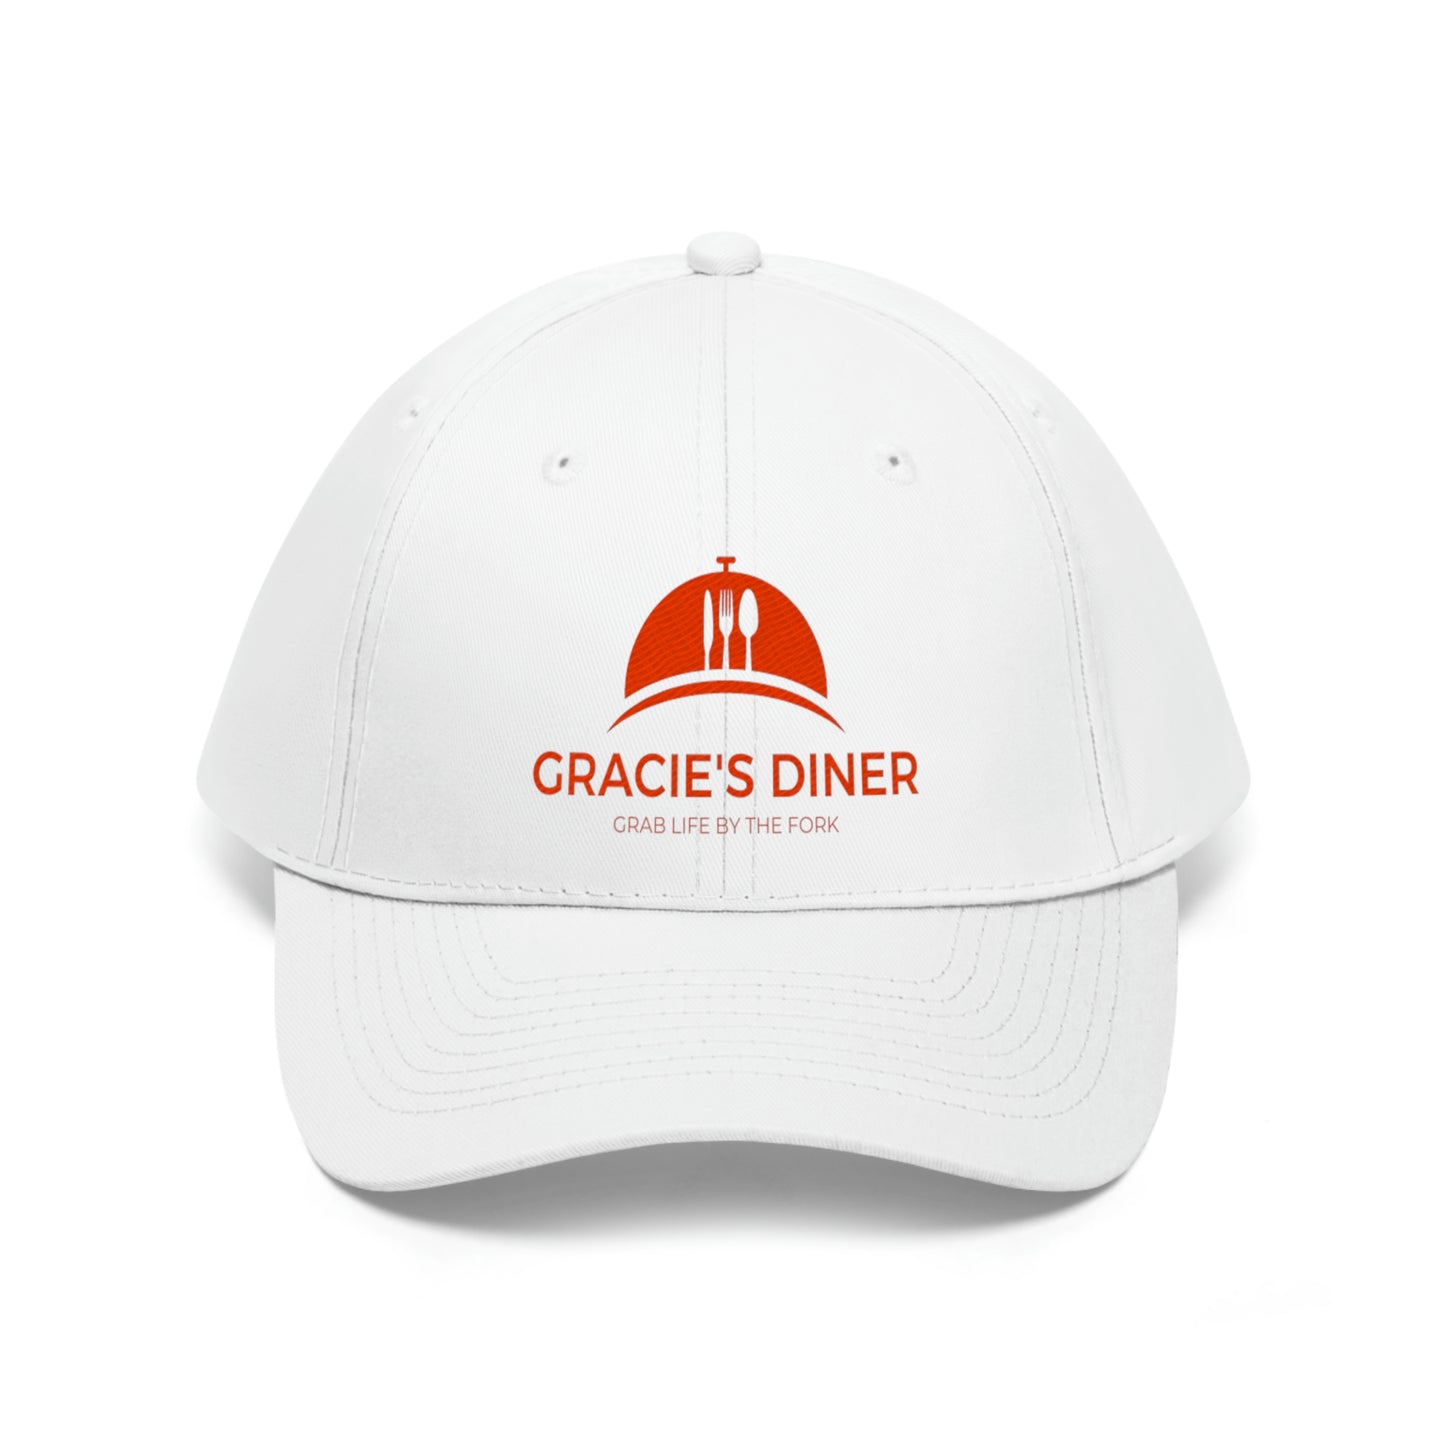 Gracie's Dinner Unisex Twill Hat